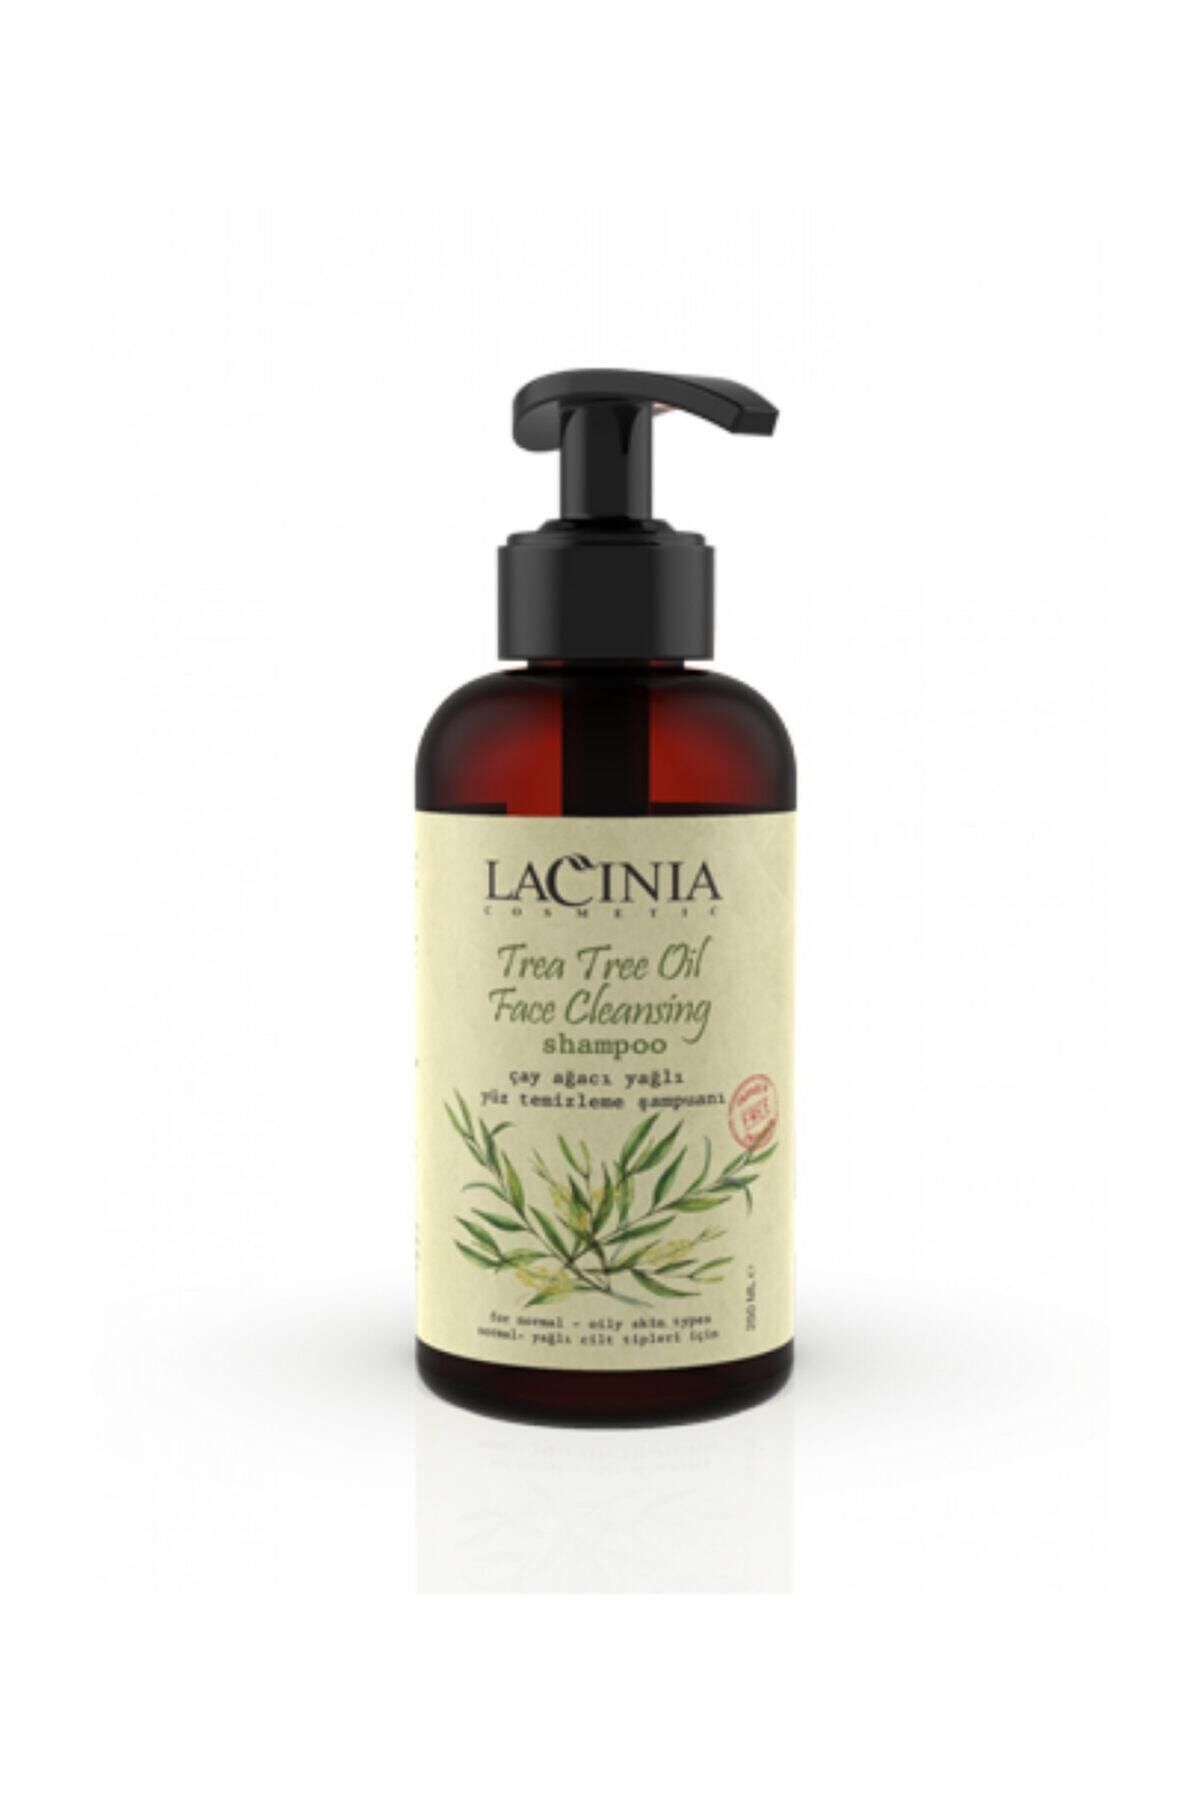 Lacinia Çay Ağacı Yağlı Yüz Temizleme Şampuanı 250 Ml